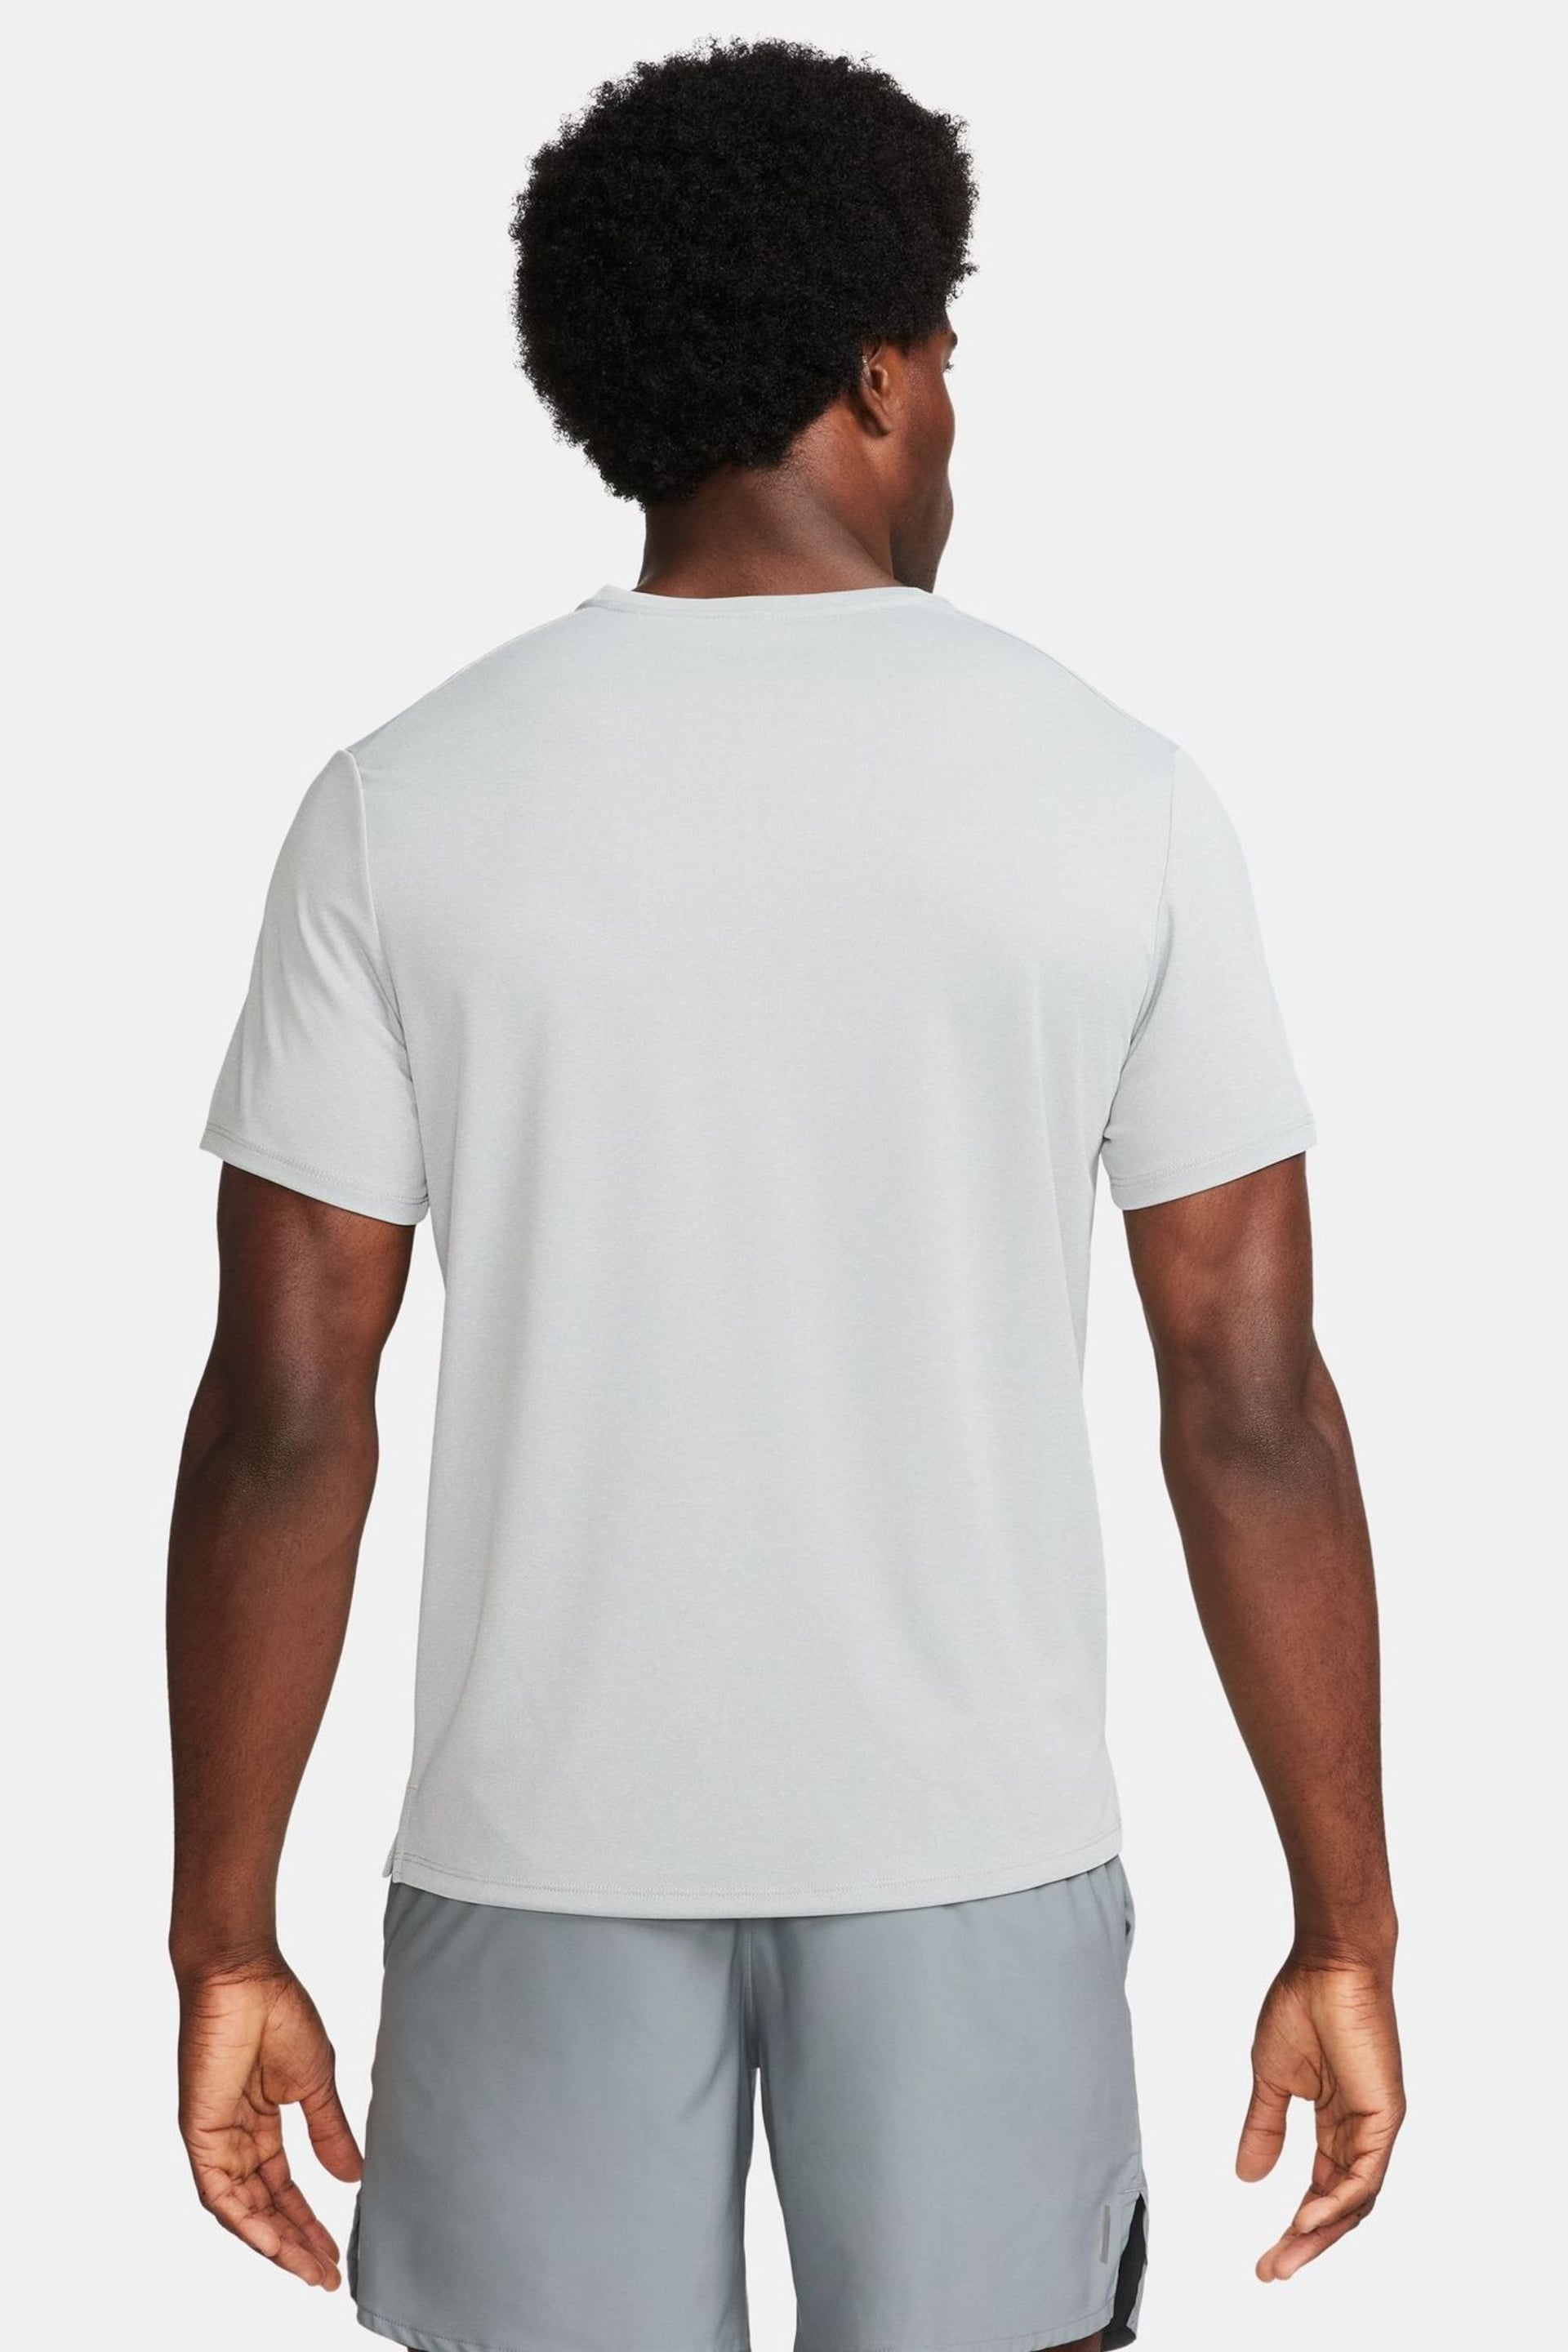 Nike Light Grey Miler Dri-FIT UV Running T-Shirt - Image 4 of 13